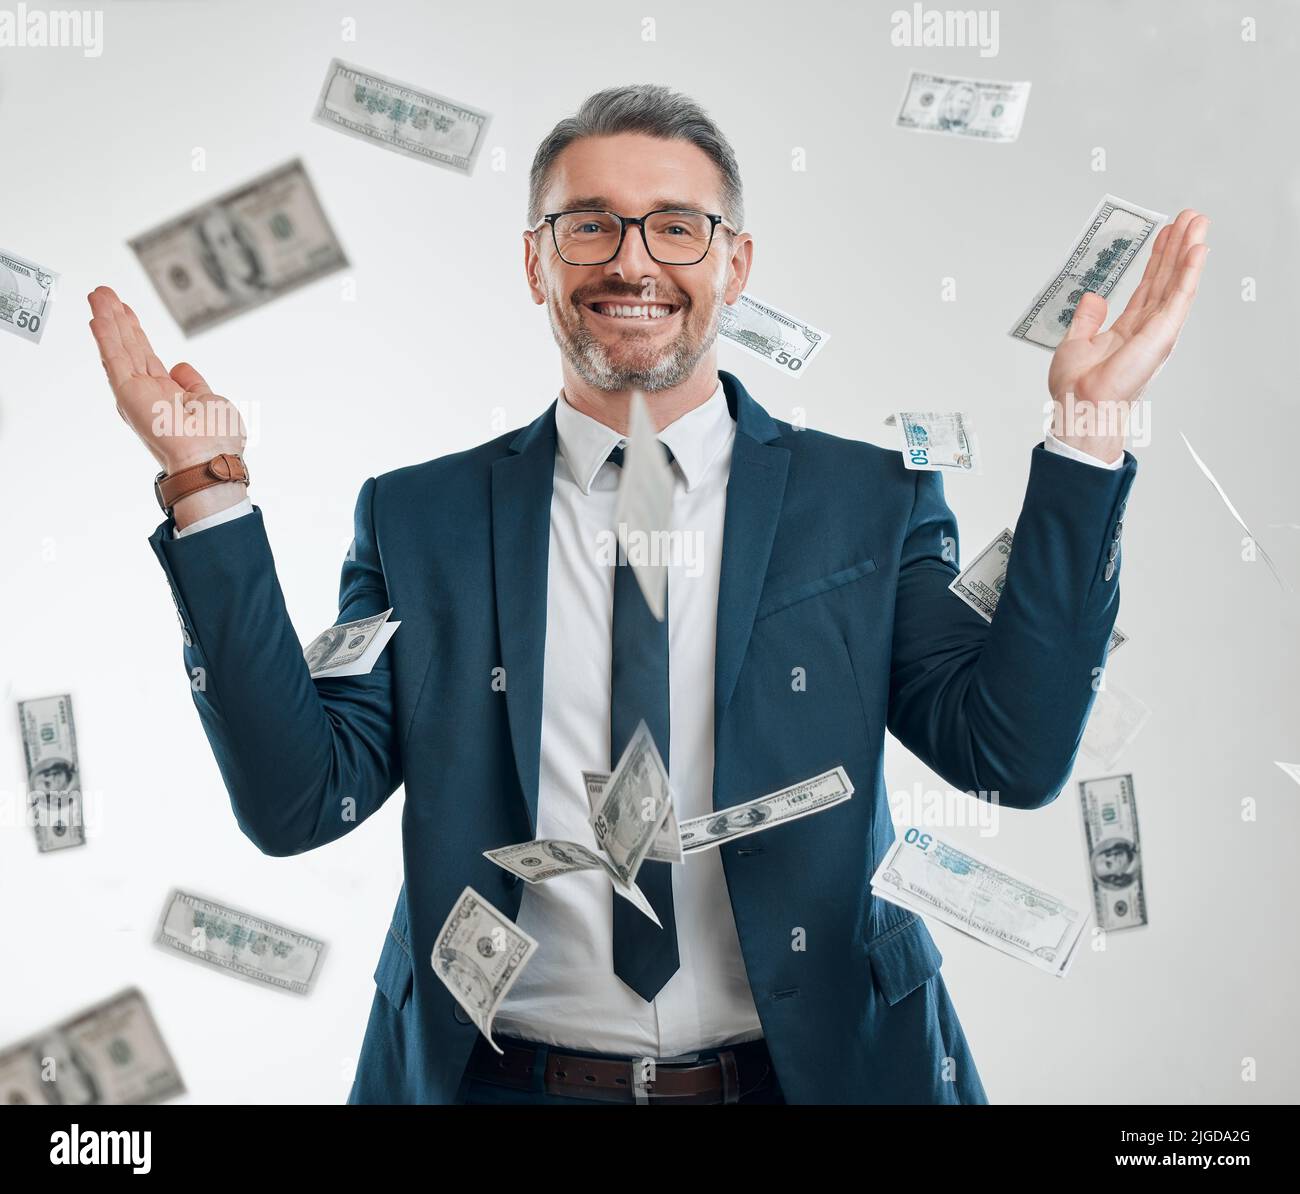 Parece que él golpeó el jackpot. Retrato de estudio de un hombre de negocios maduro rodeado de caída de dinero. Foto de stock